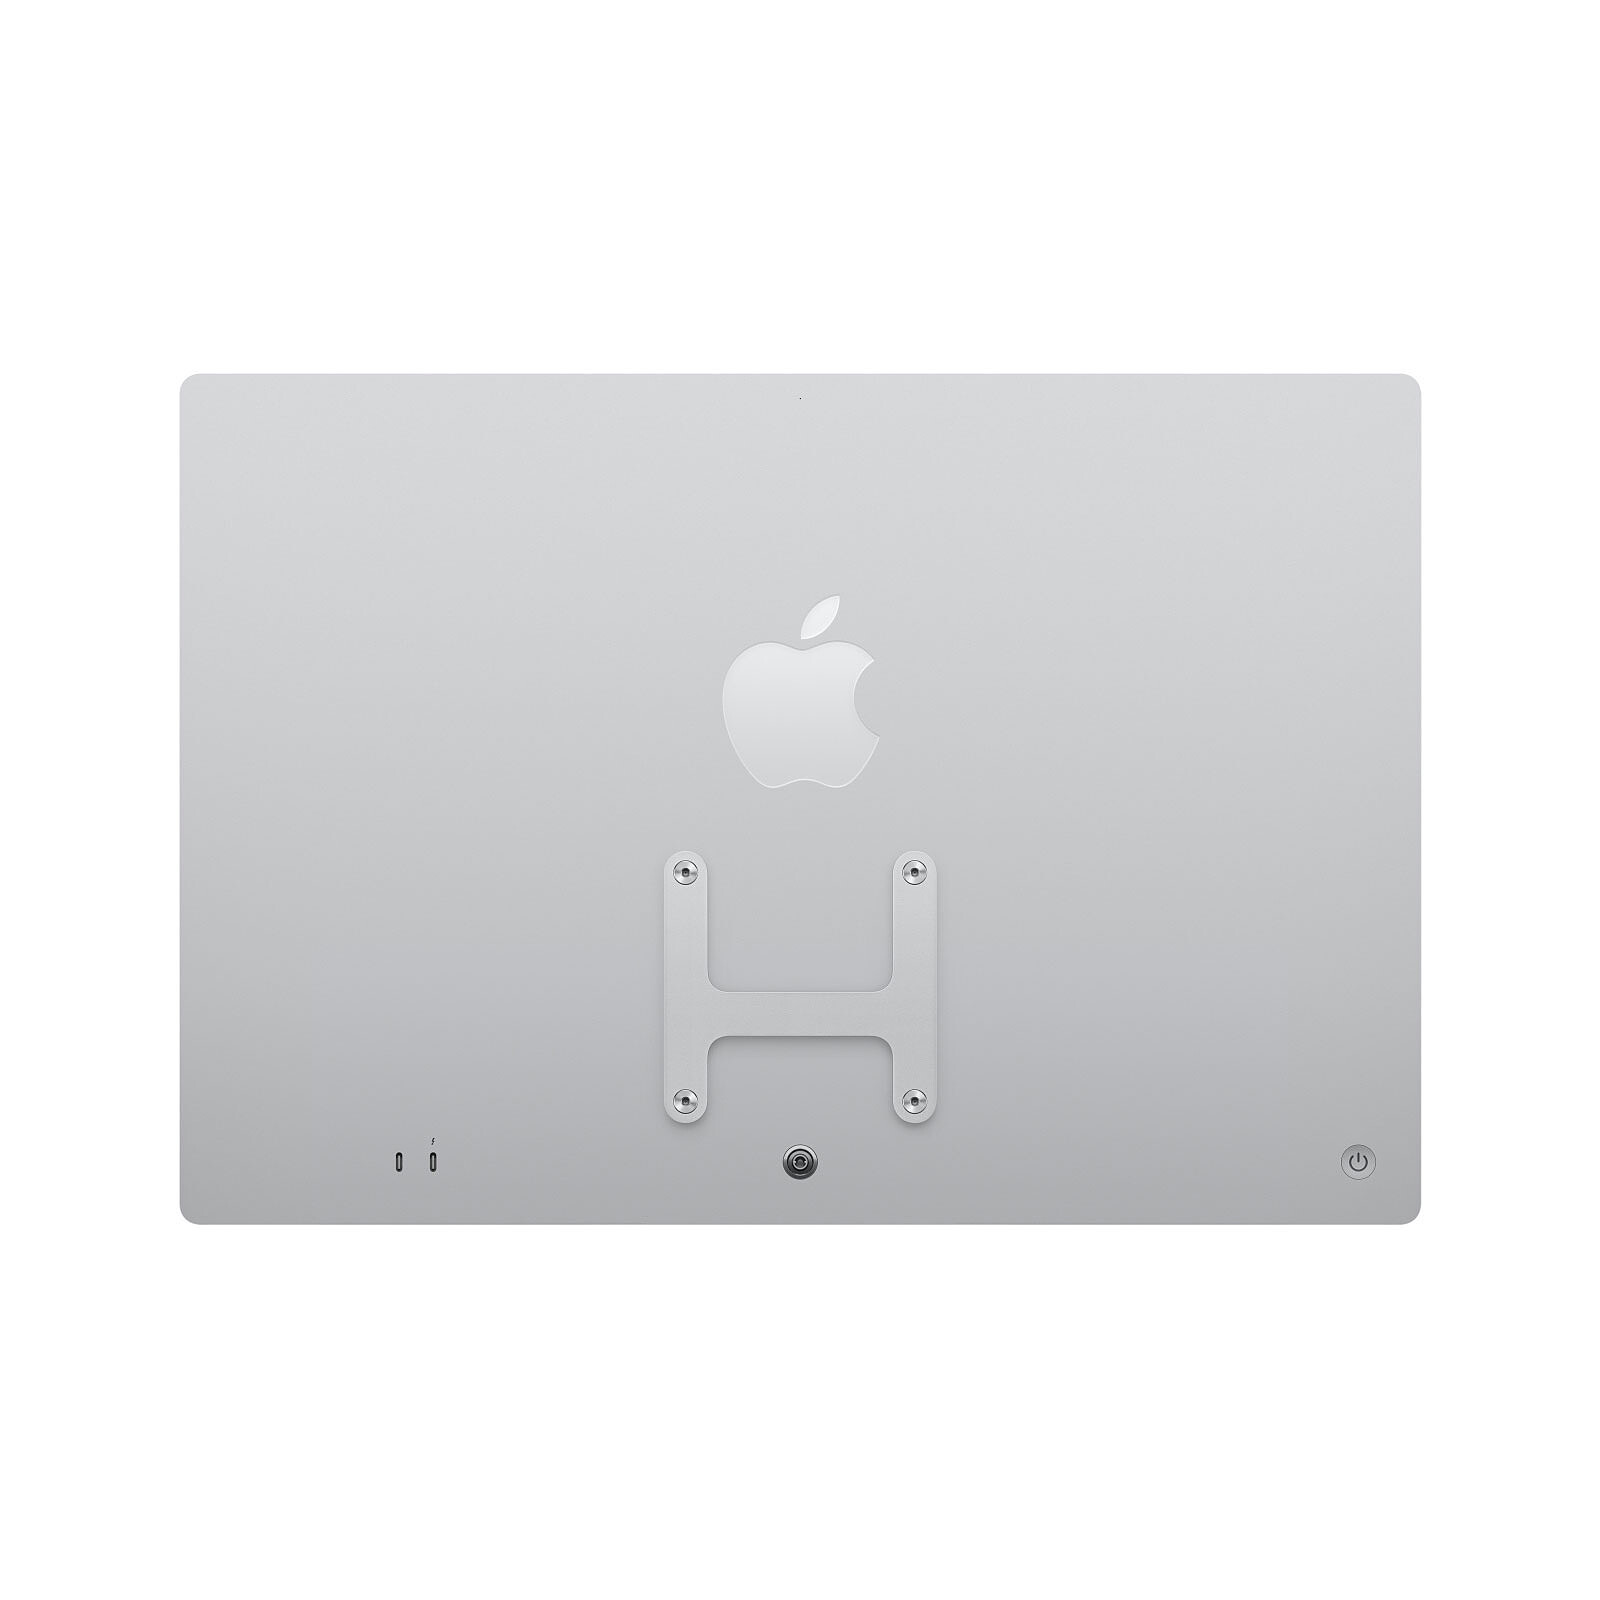 Un accessoire pour monter tous les iMac en VESA